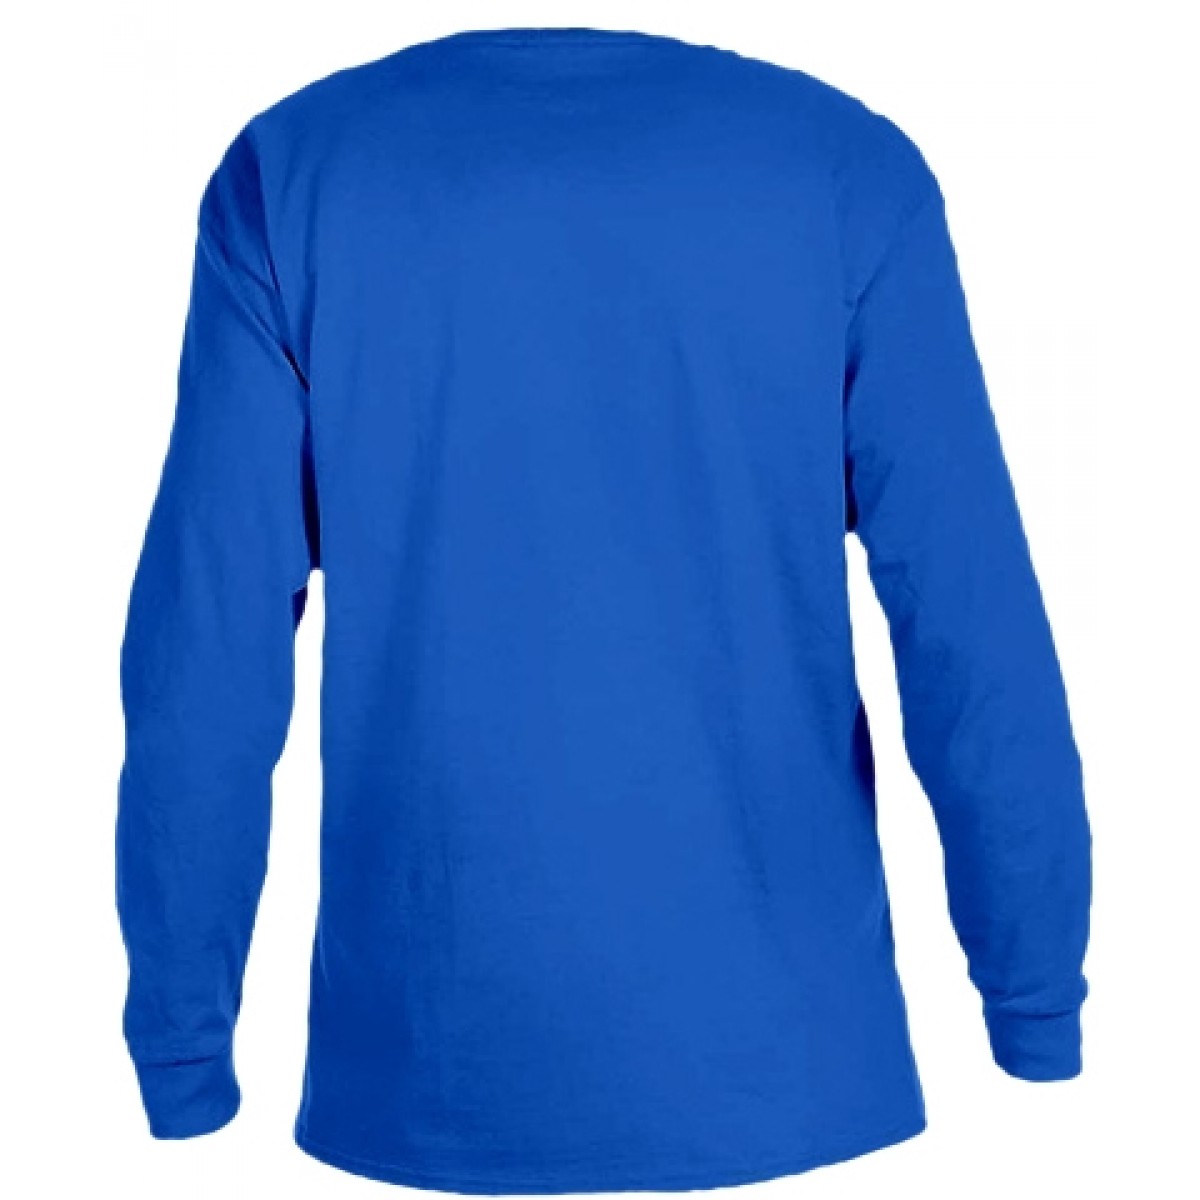 Ultra Cotton Long-Sleeve T-Shirt